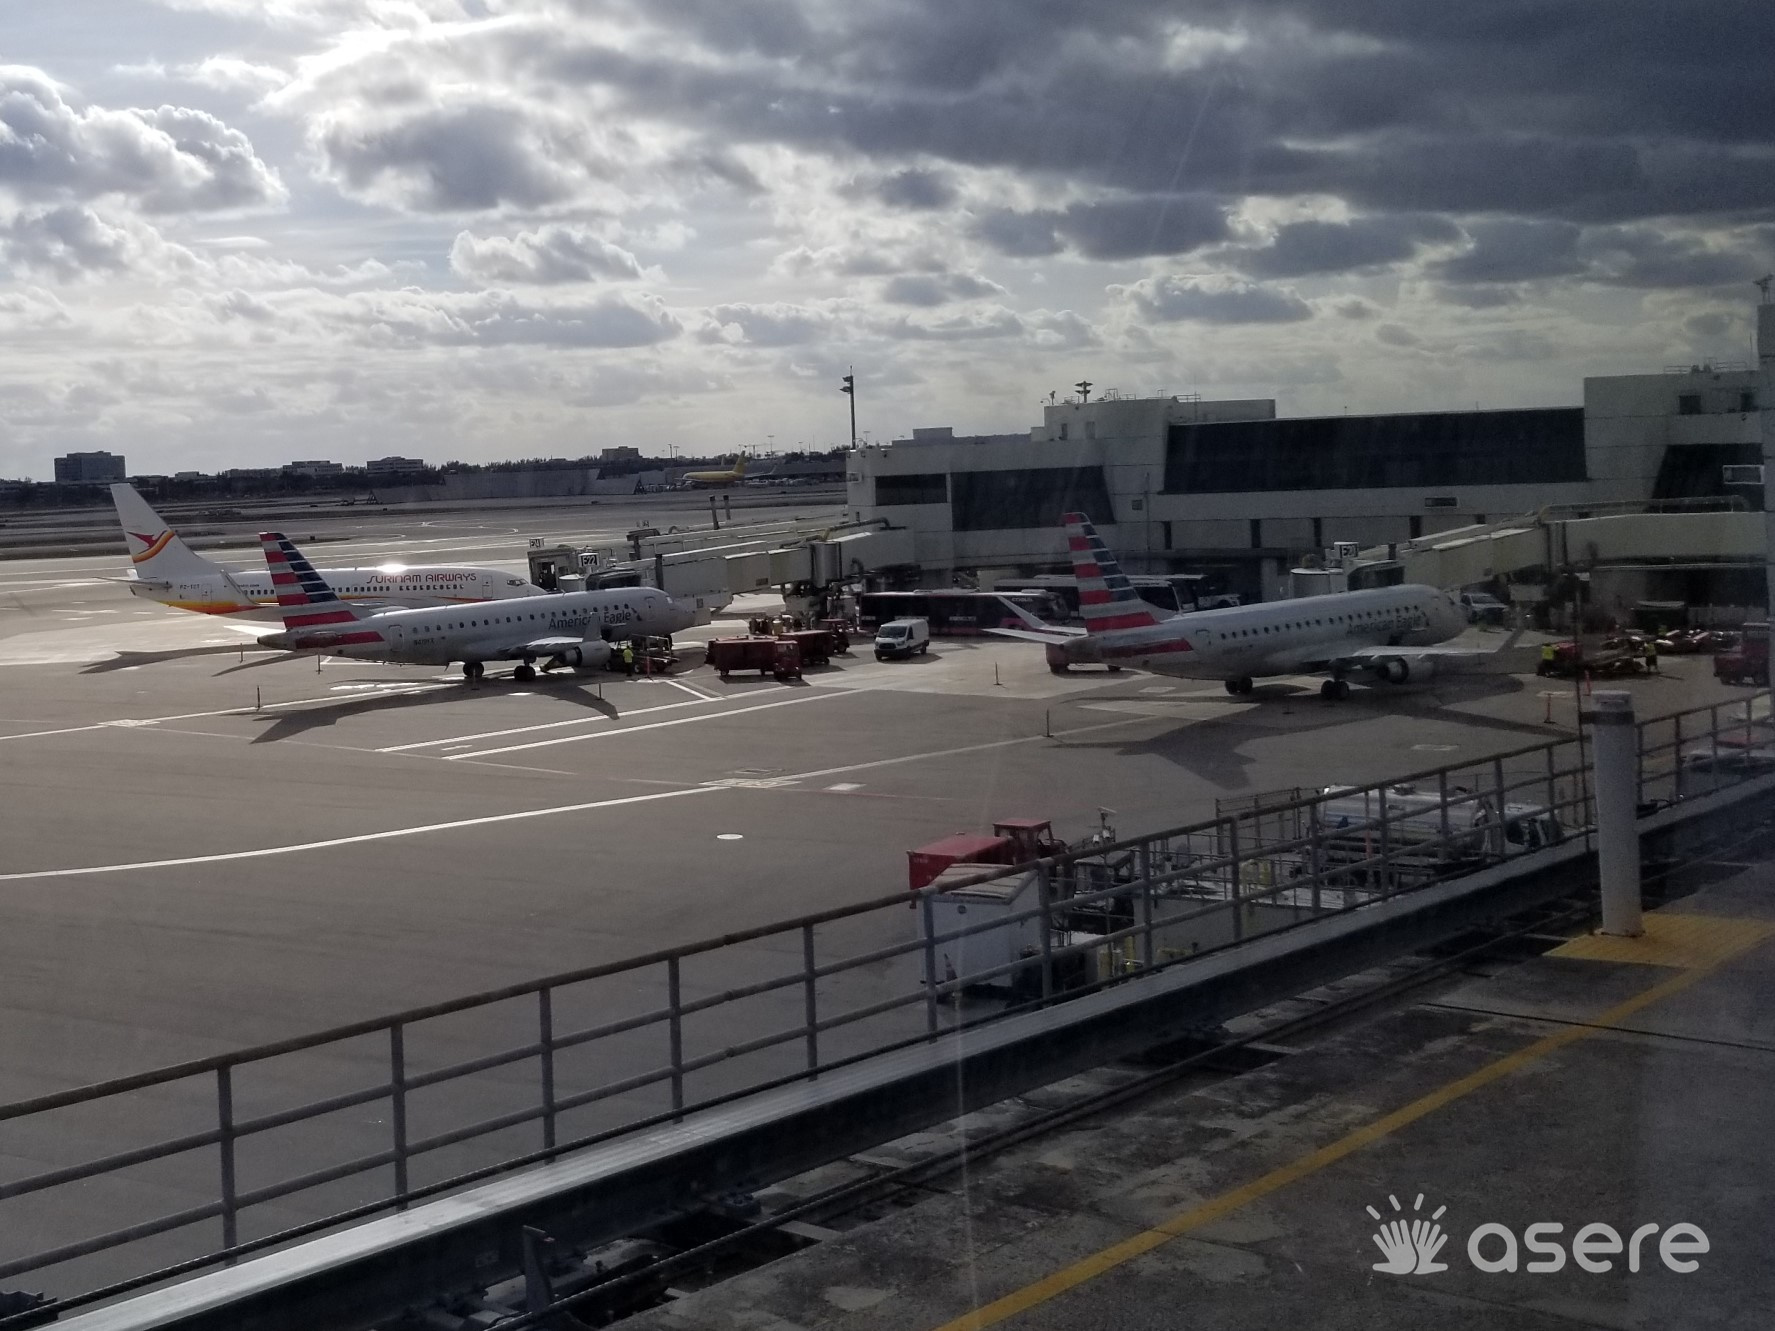 Pelean cubanos por cancelación de vuelo en aeropuerto Miami